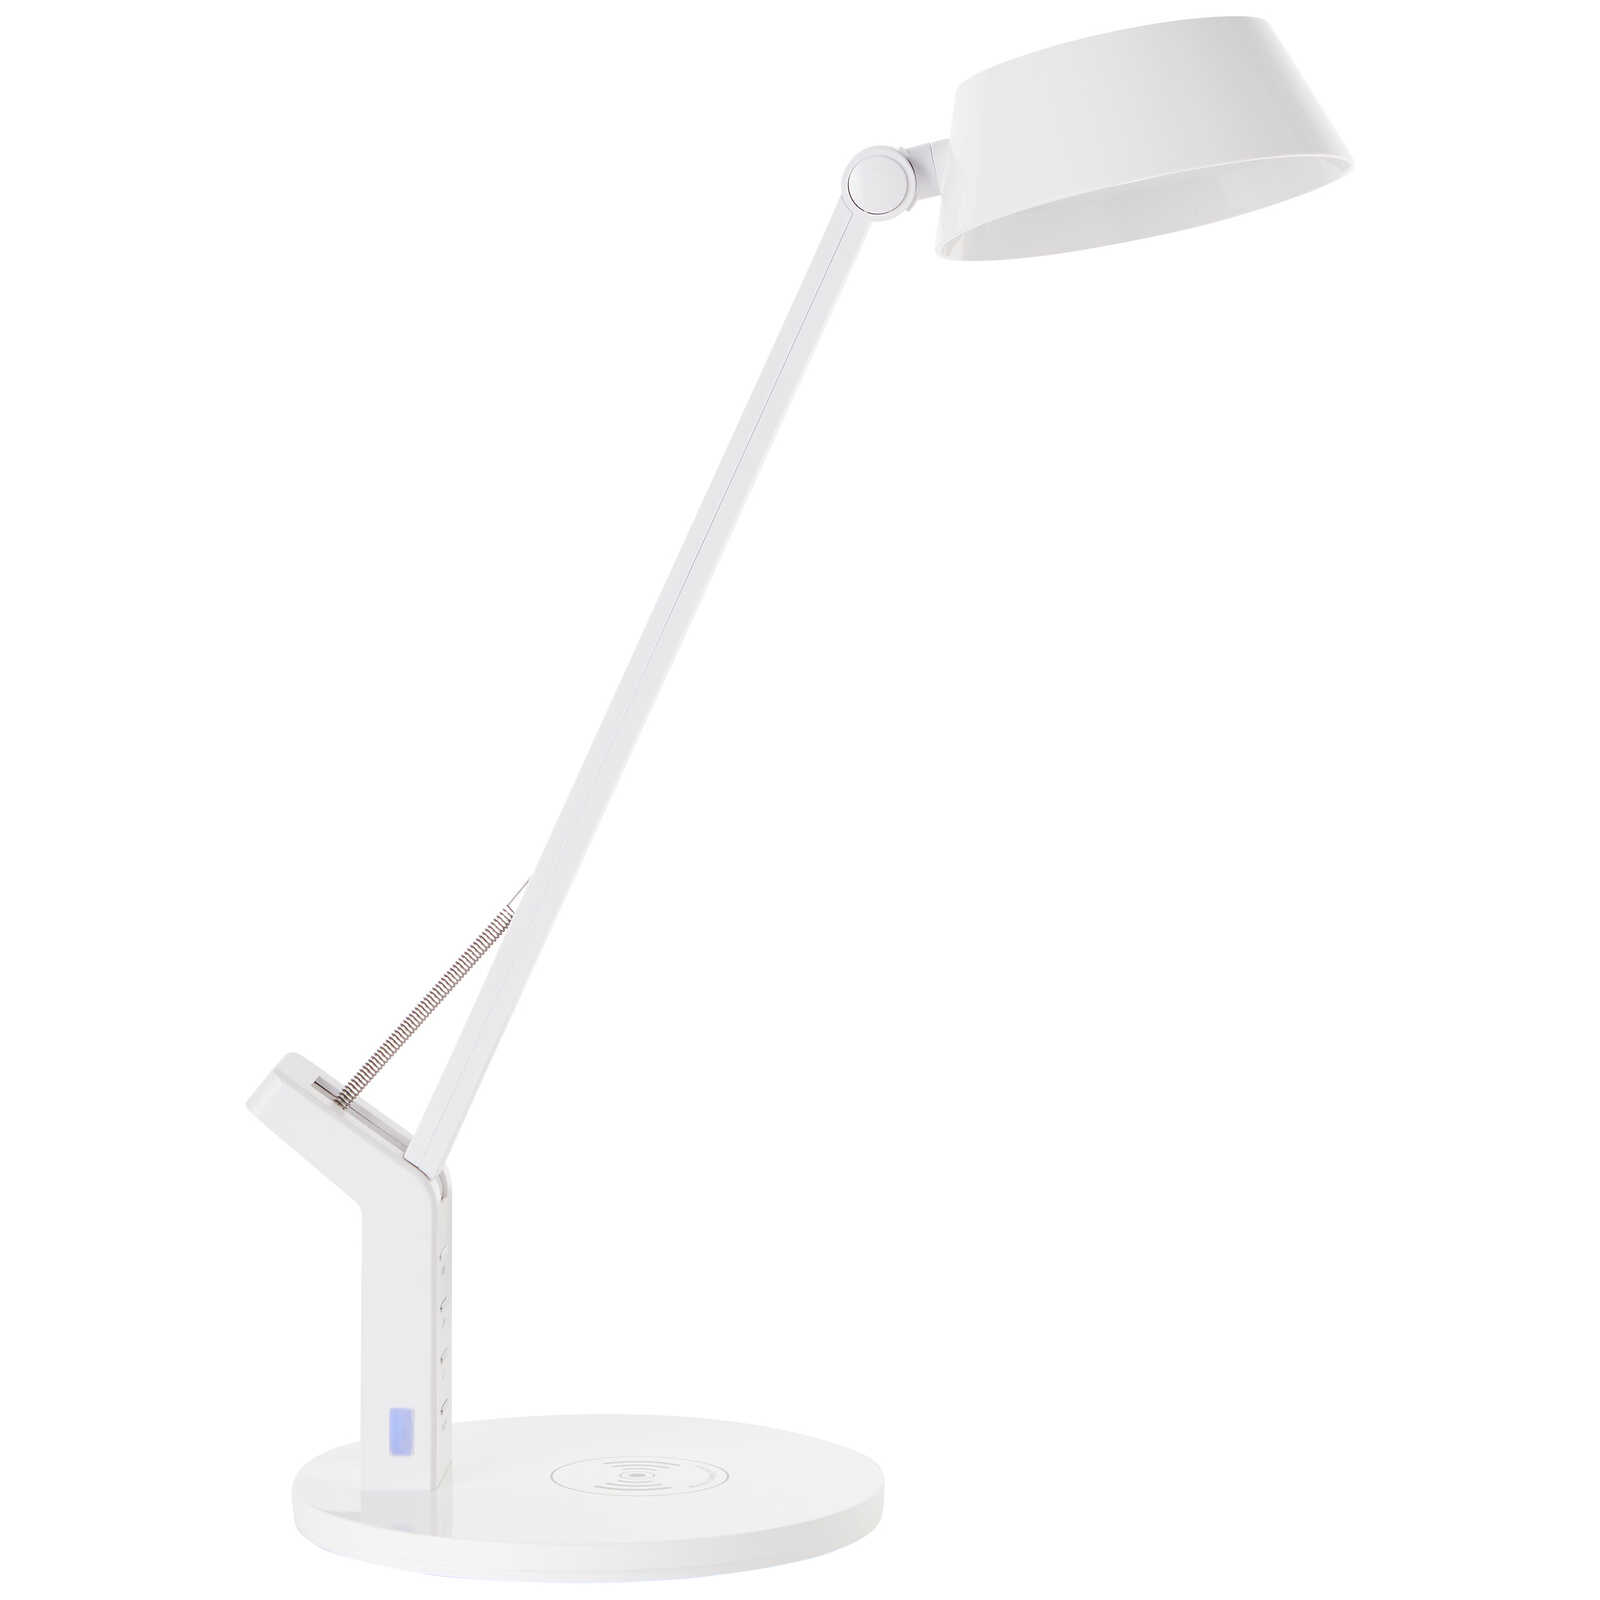             Plastic table lamp - Julius 1 - White
        